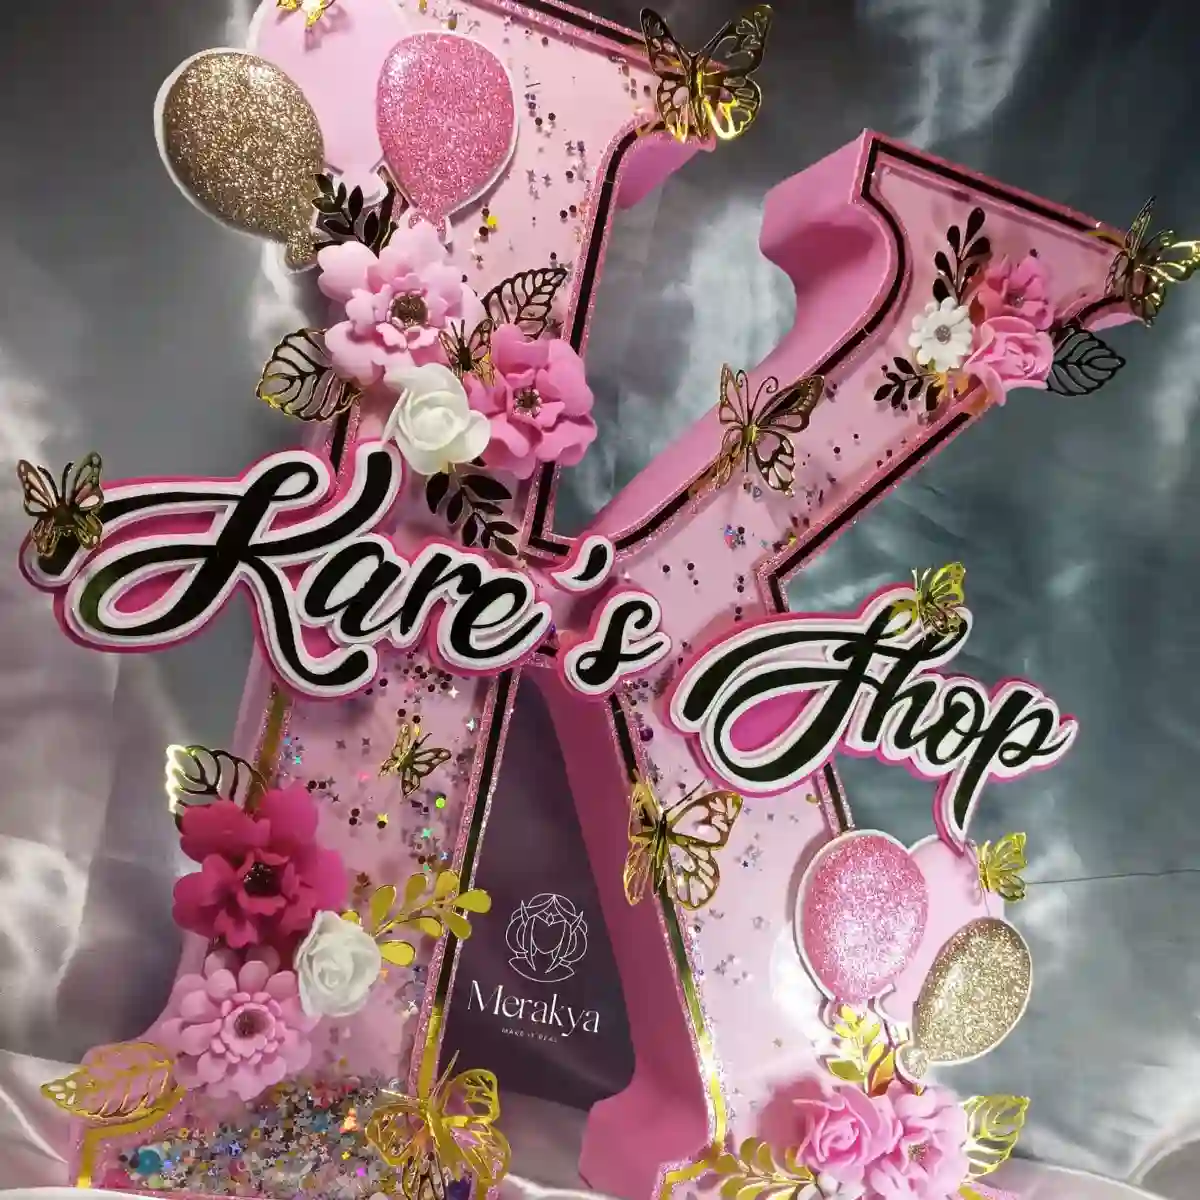 Kare's Shop